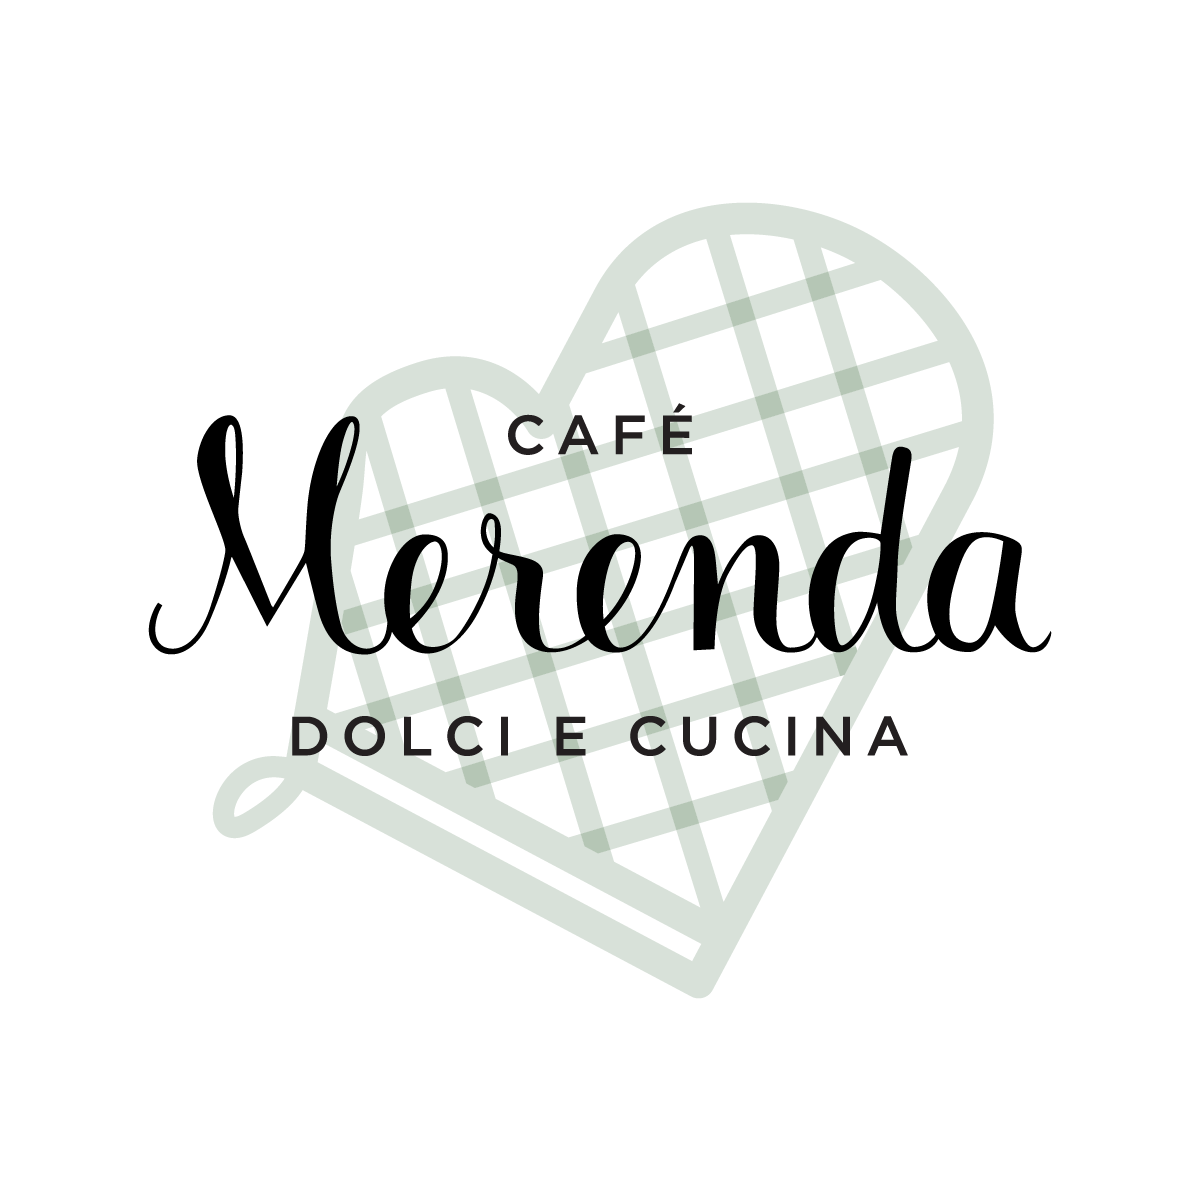 café merenda bistrot in rome by laboratore innocenti design office studio lido interior project art direction and brand identity